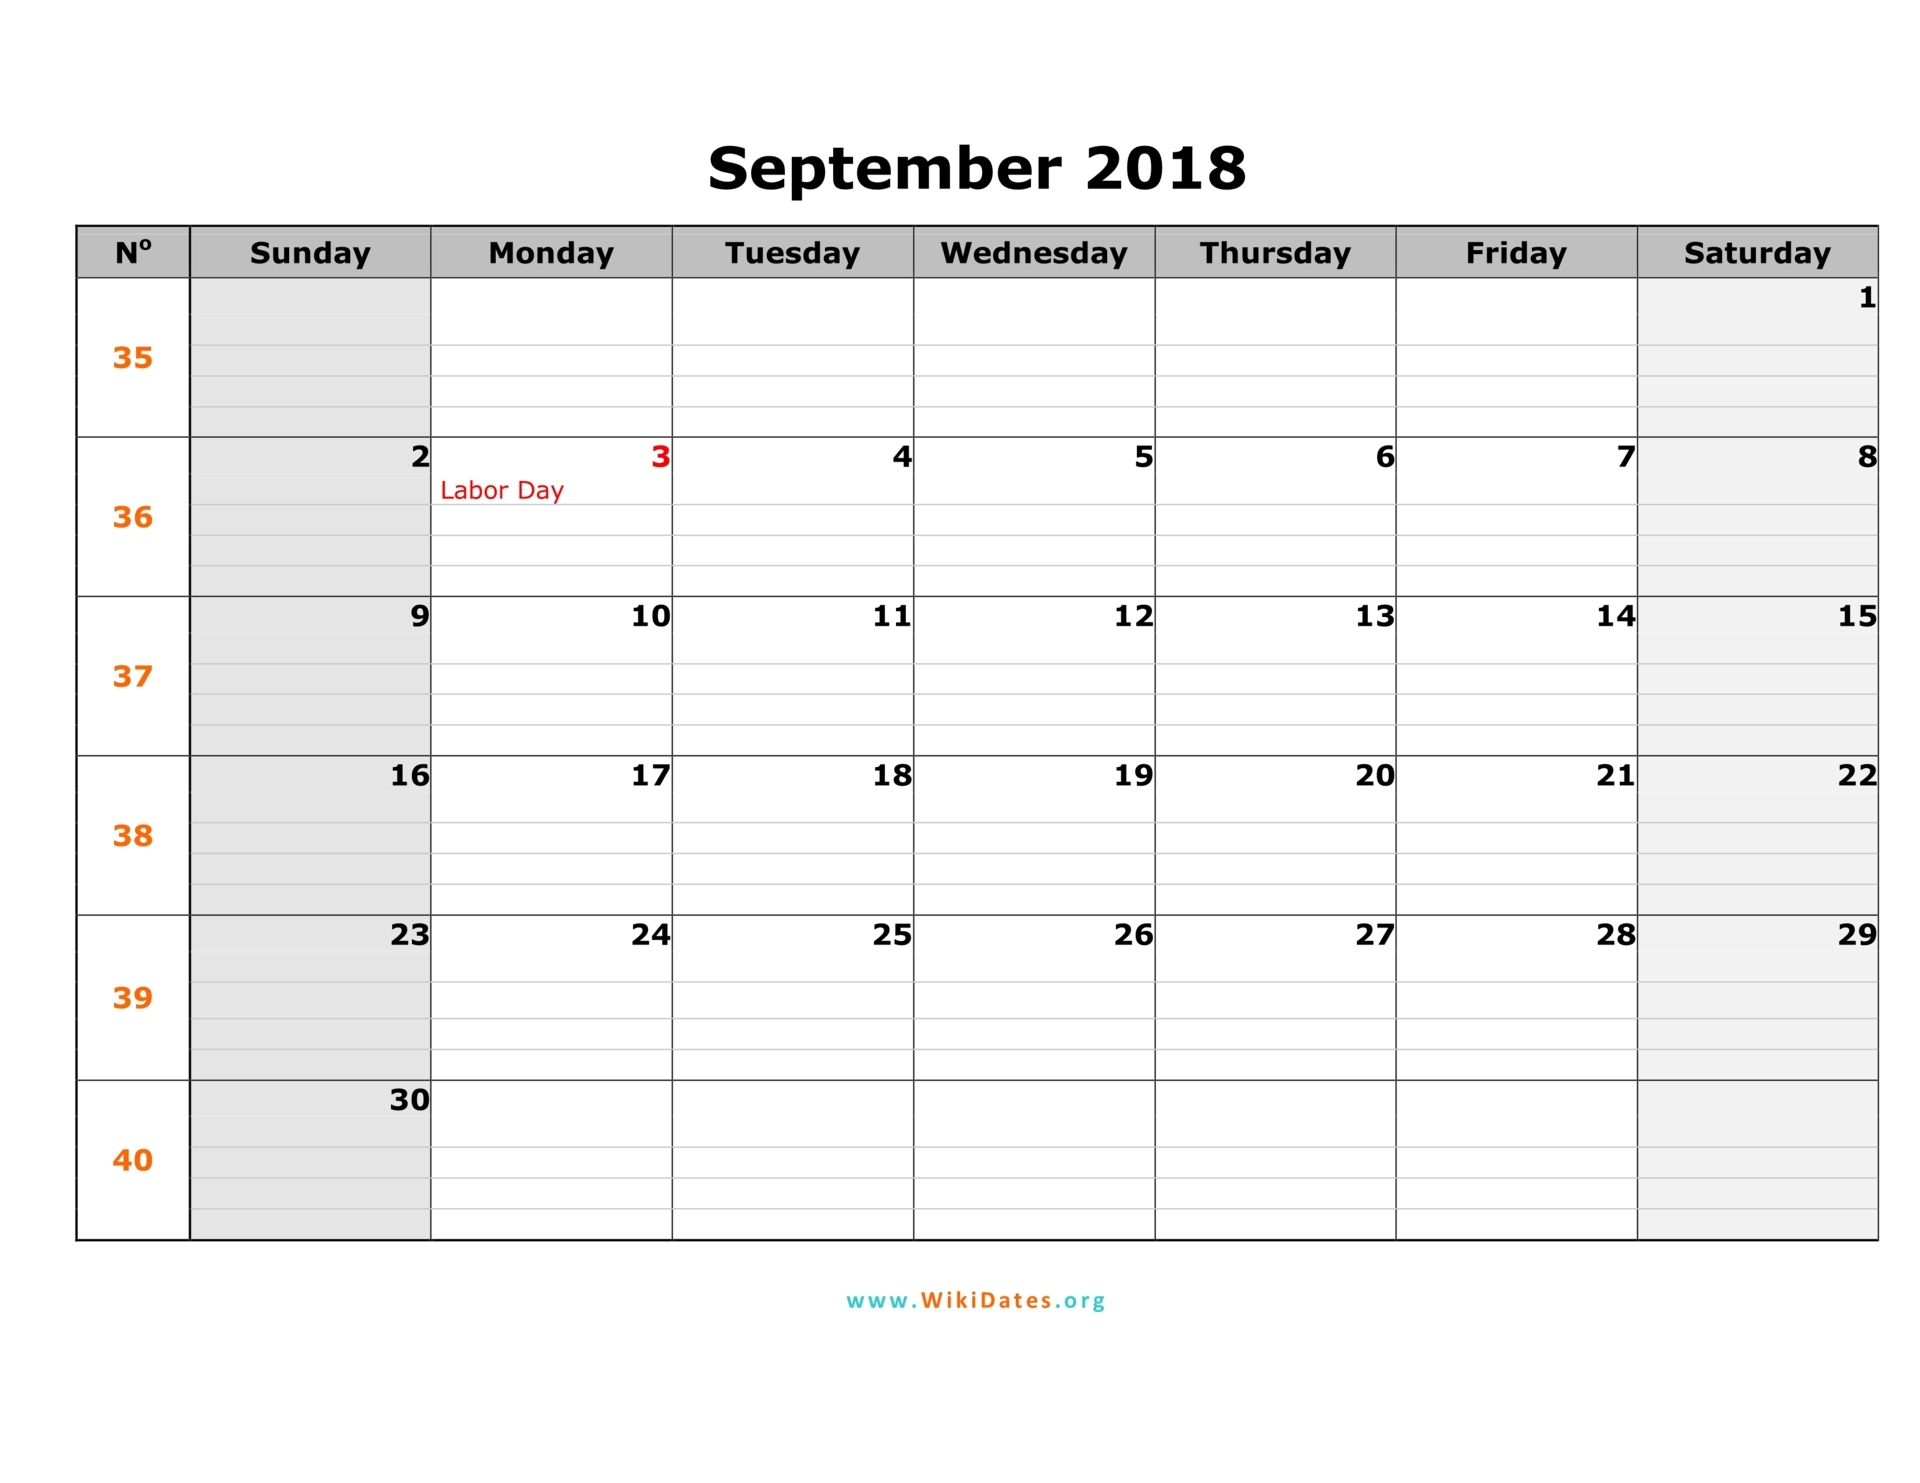 september-2018-calendar-wikidates